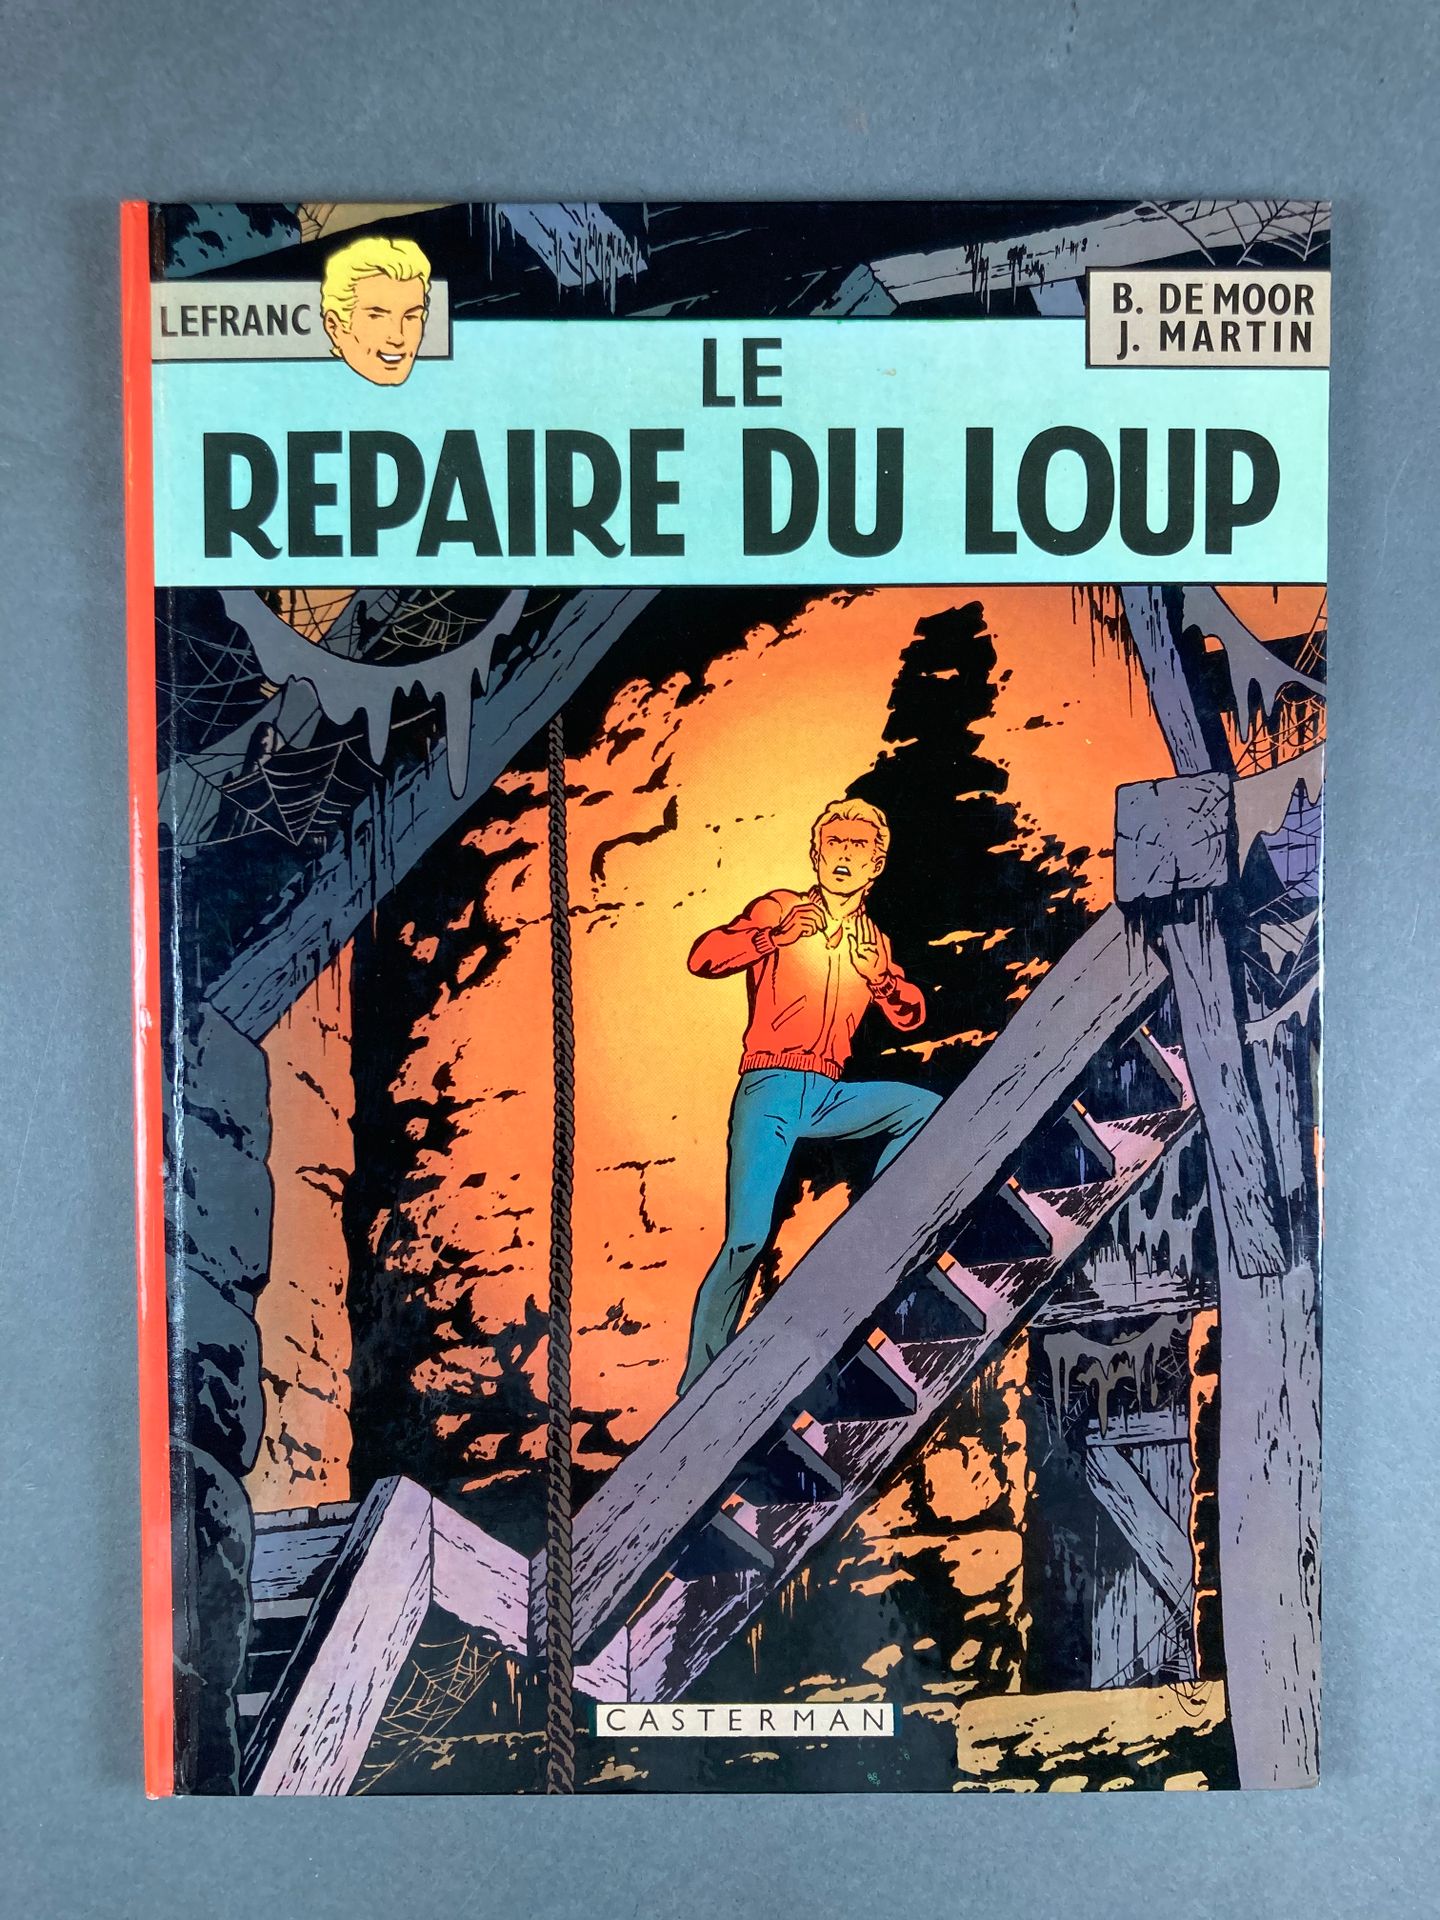 Martin-De Moor - Lefranc Le repaire du loup, 4, 1974, EO, von Casterman, TBE